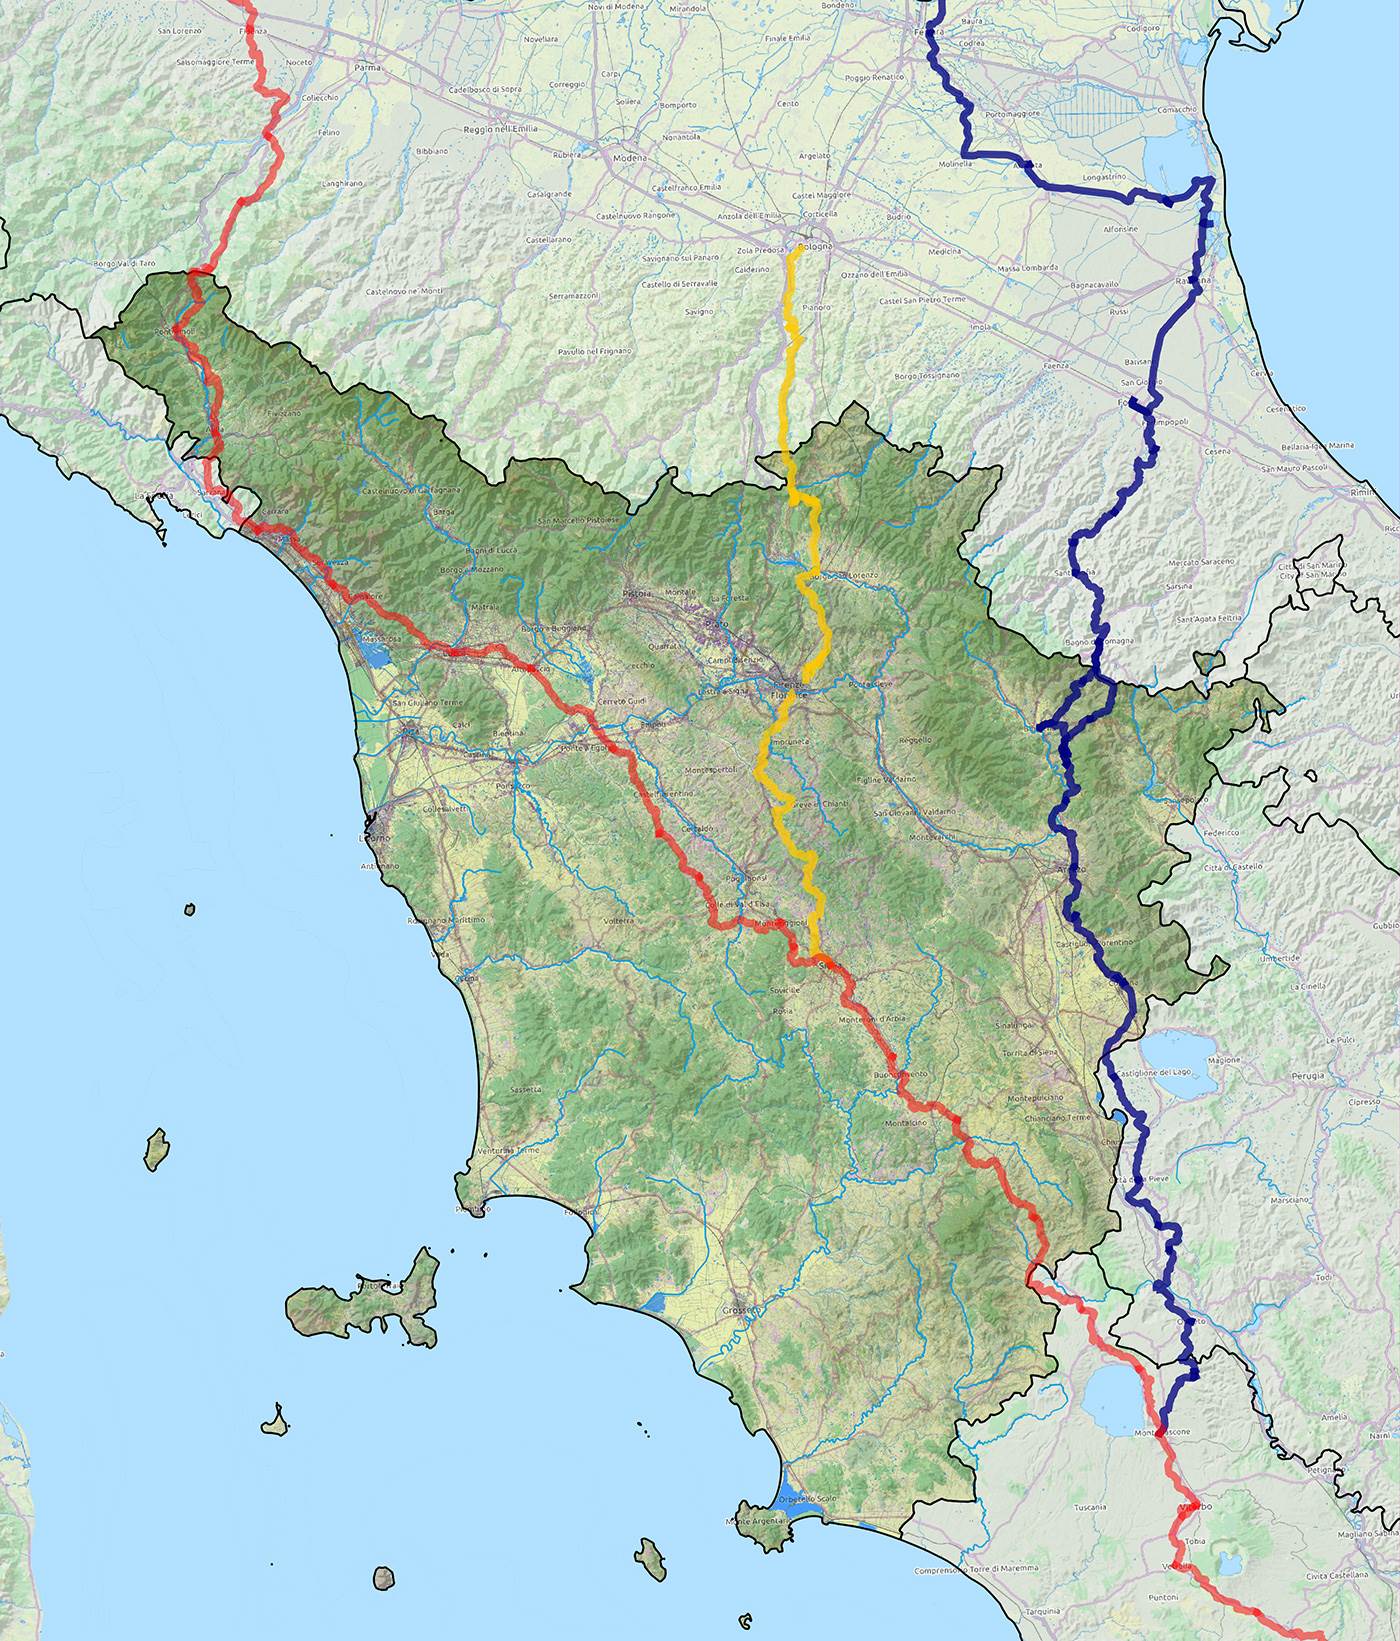 Le principali direttrici della viabilità medievale in Toscana: la via Francigena (in rosso), la via Germanica (in blu), la via Bolognese e Sanese (in giallo).